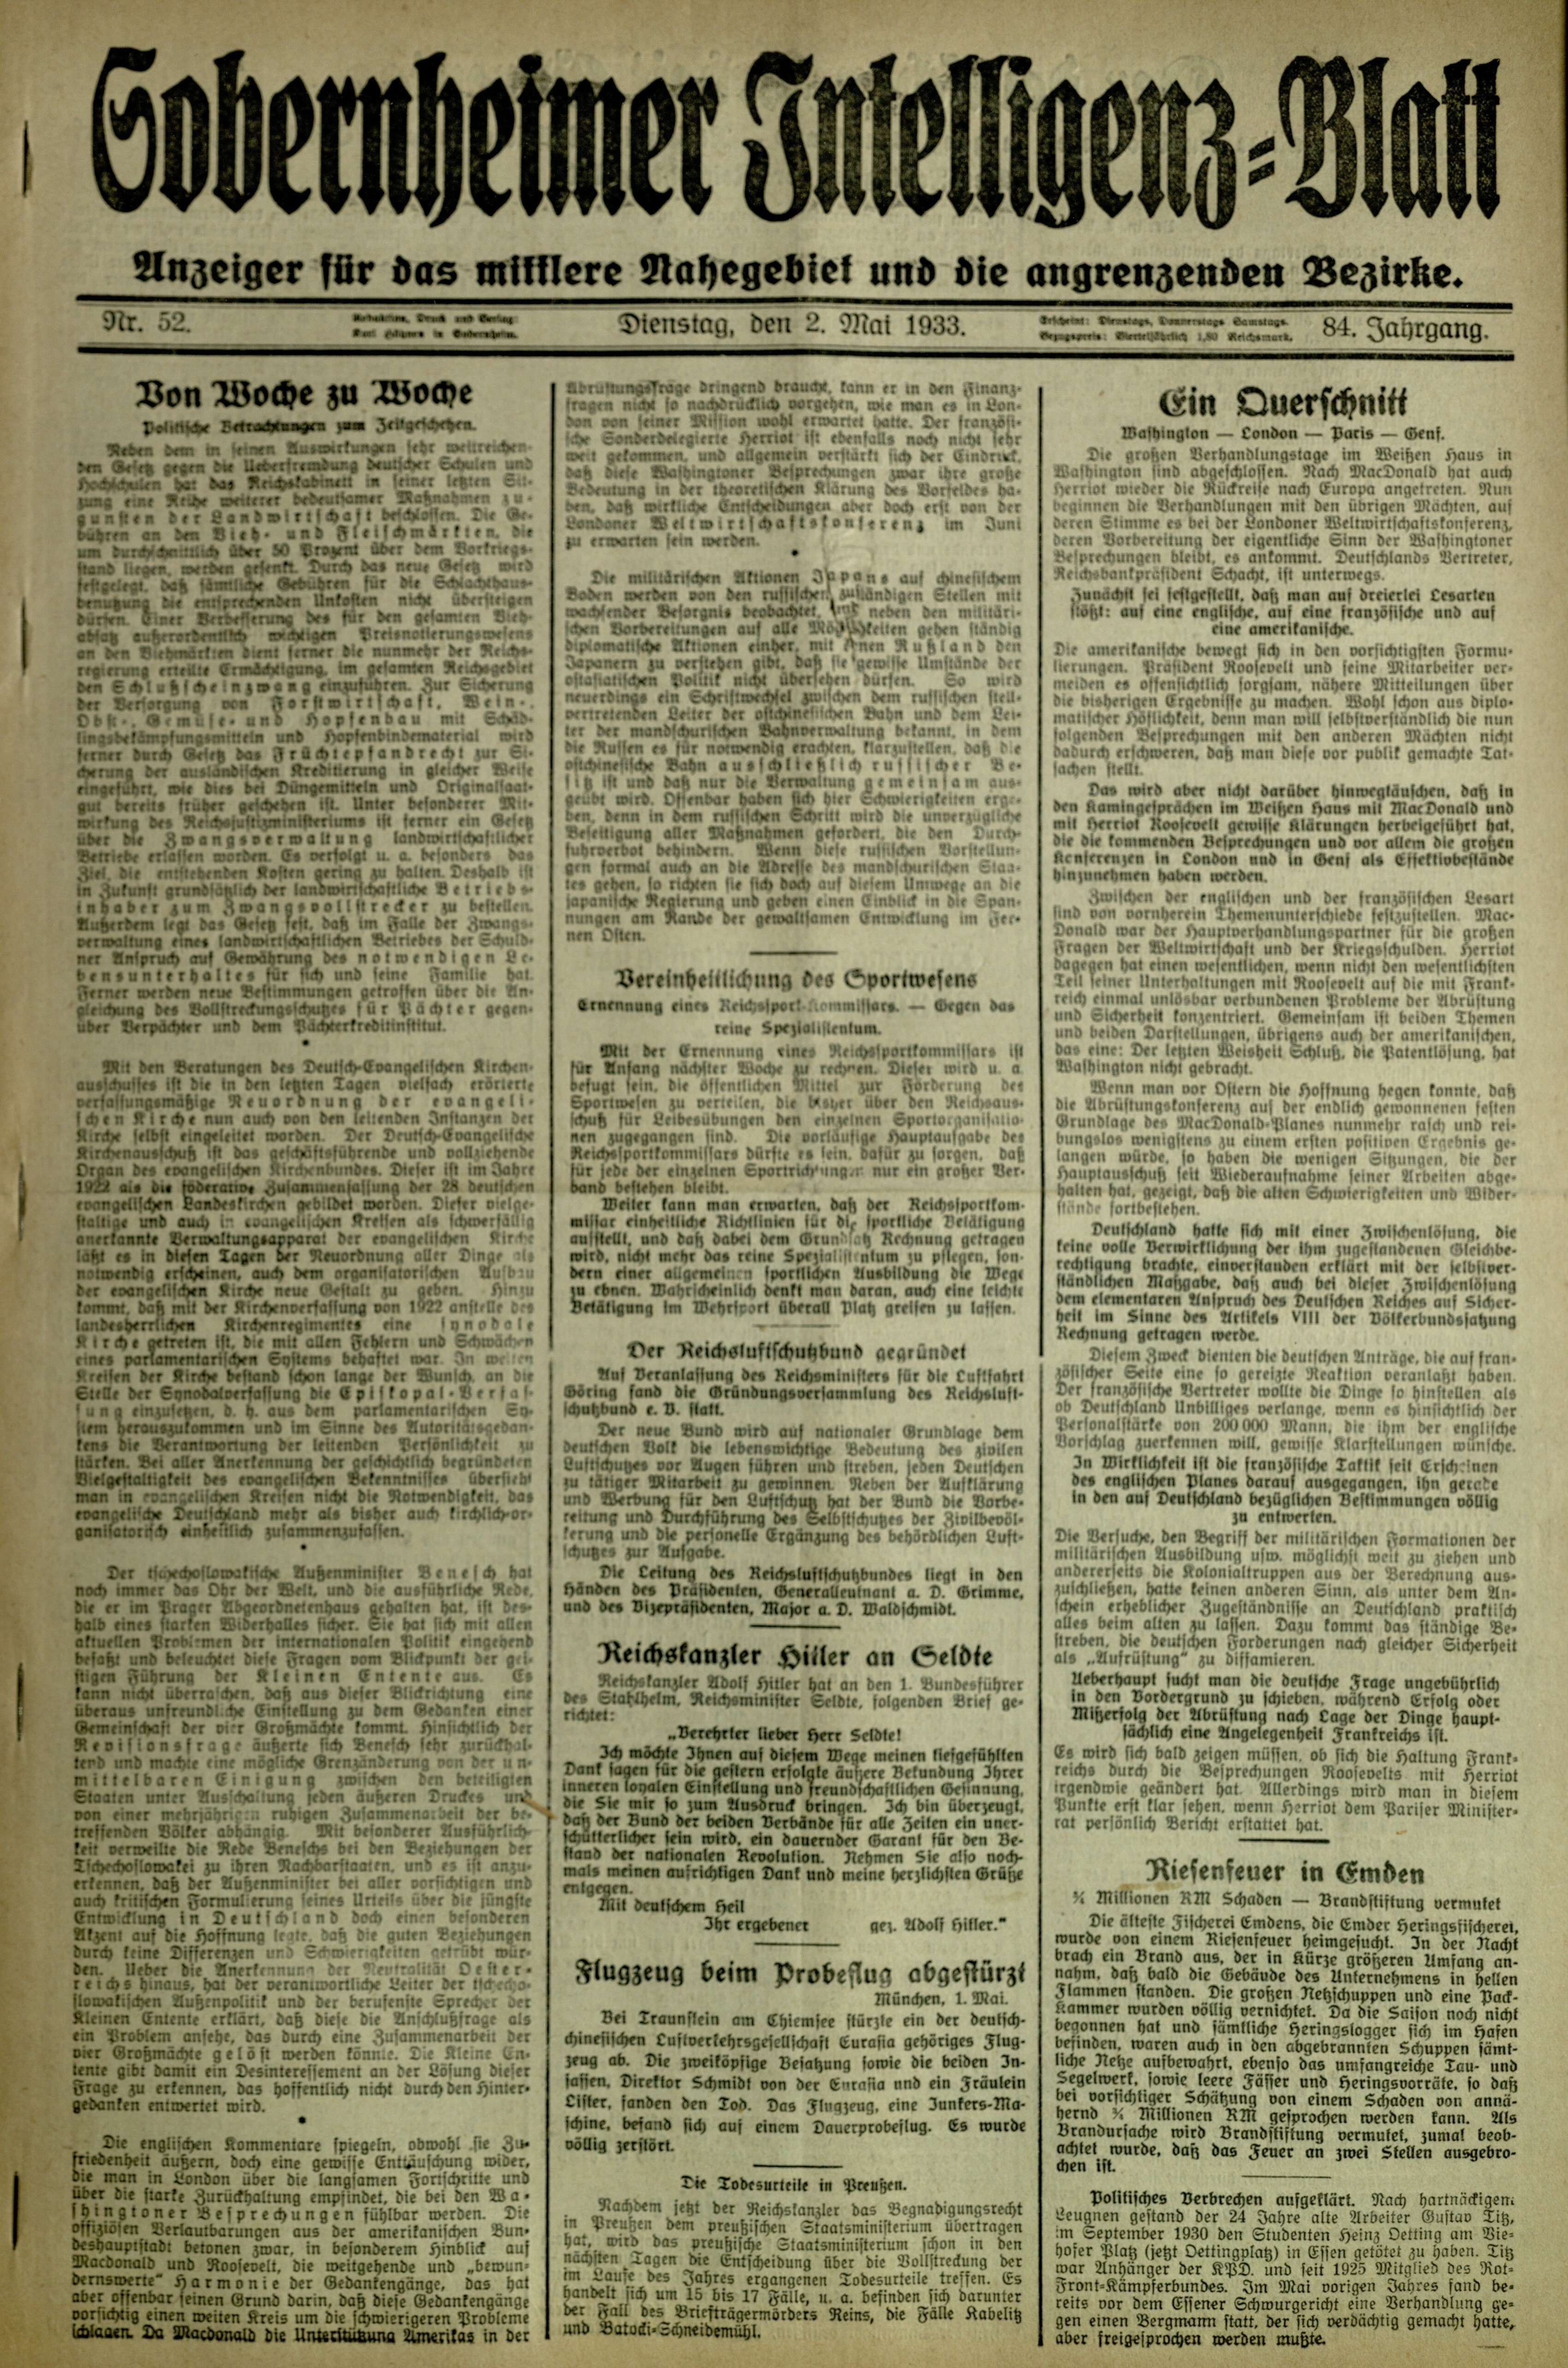 Zeitung: Sobernheimer Intelligenzblatt; Mai 1933, Jg. 84 Nr. 33 (Heimatmuseum Bad Sobernheim CC BY-NC-SA)